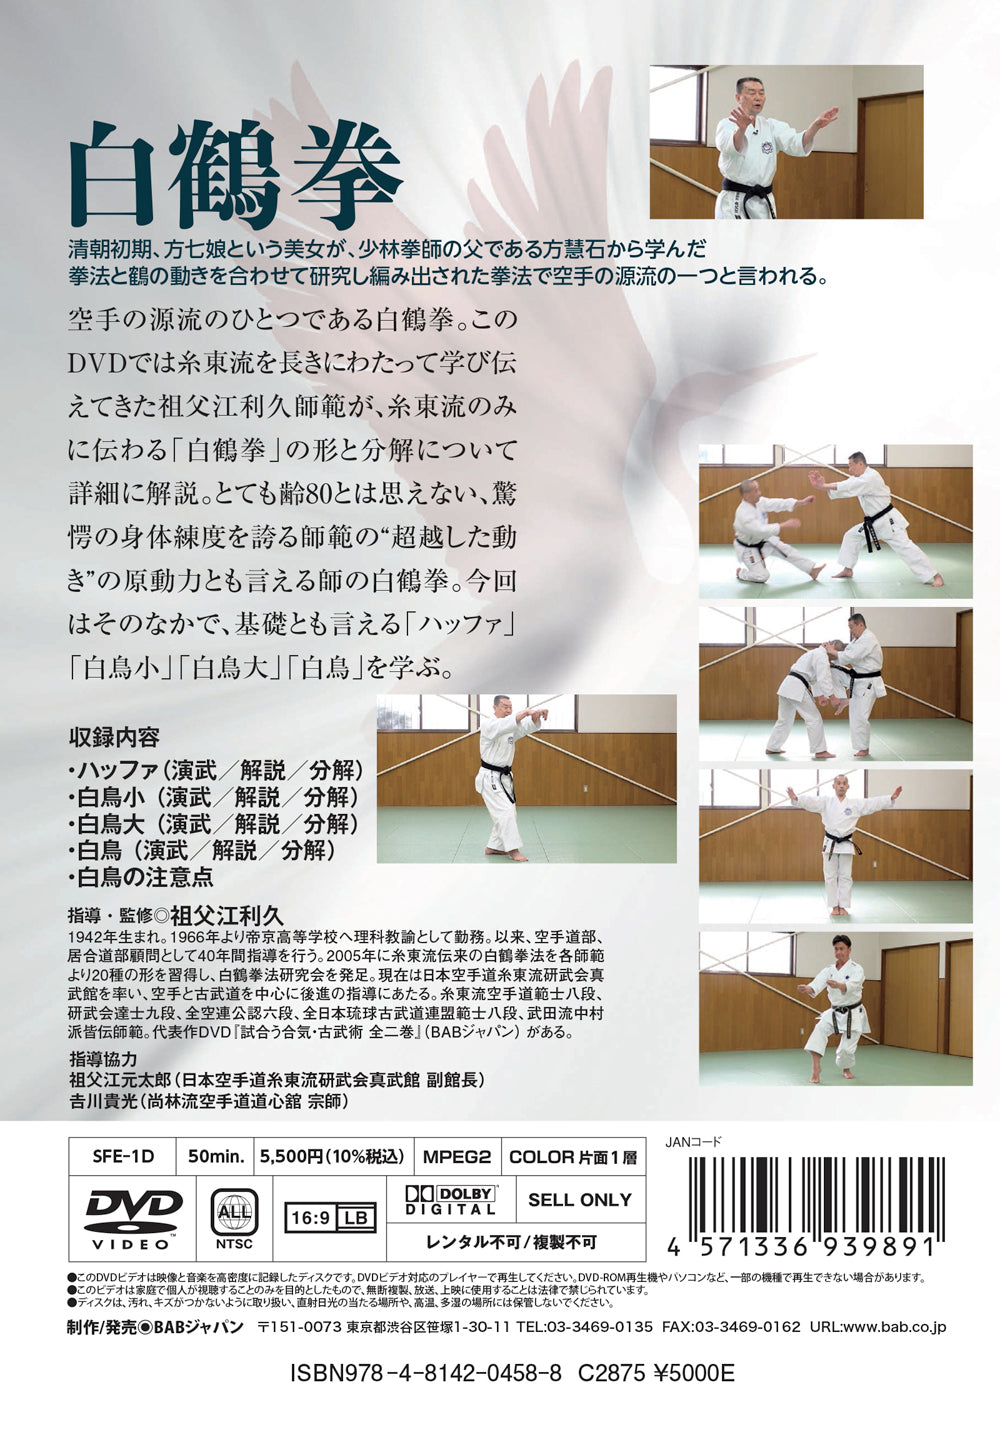 Hakutsuru Ken (White Crane) DVD 1 by Sofue Toshihisa